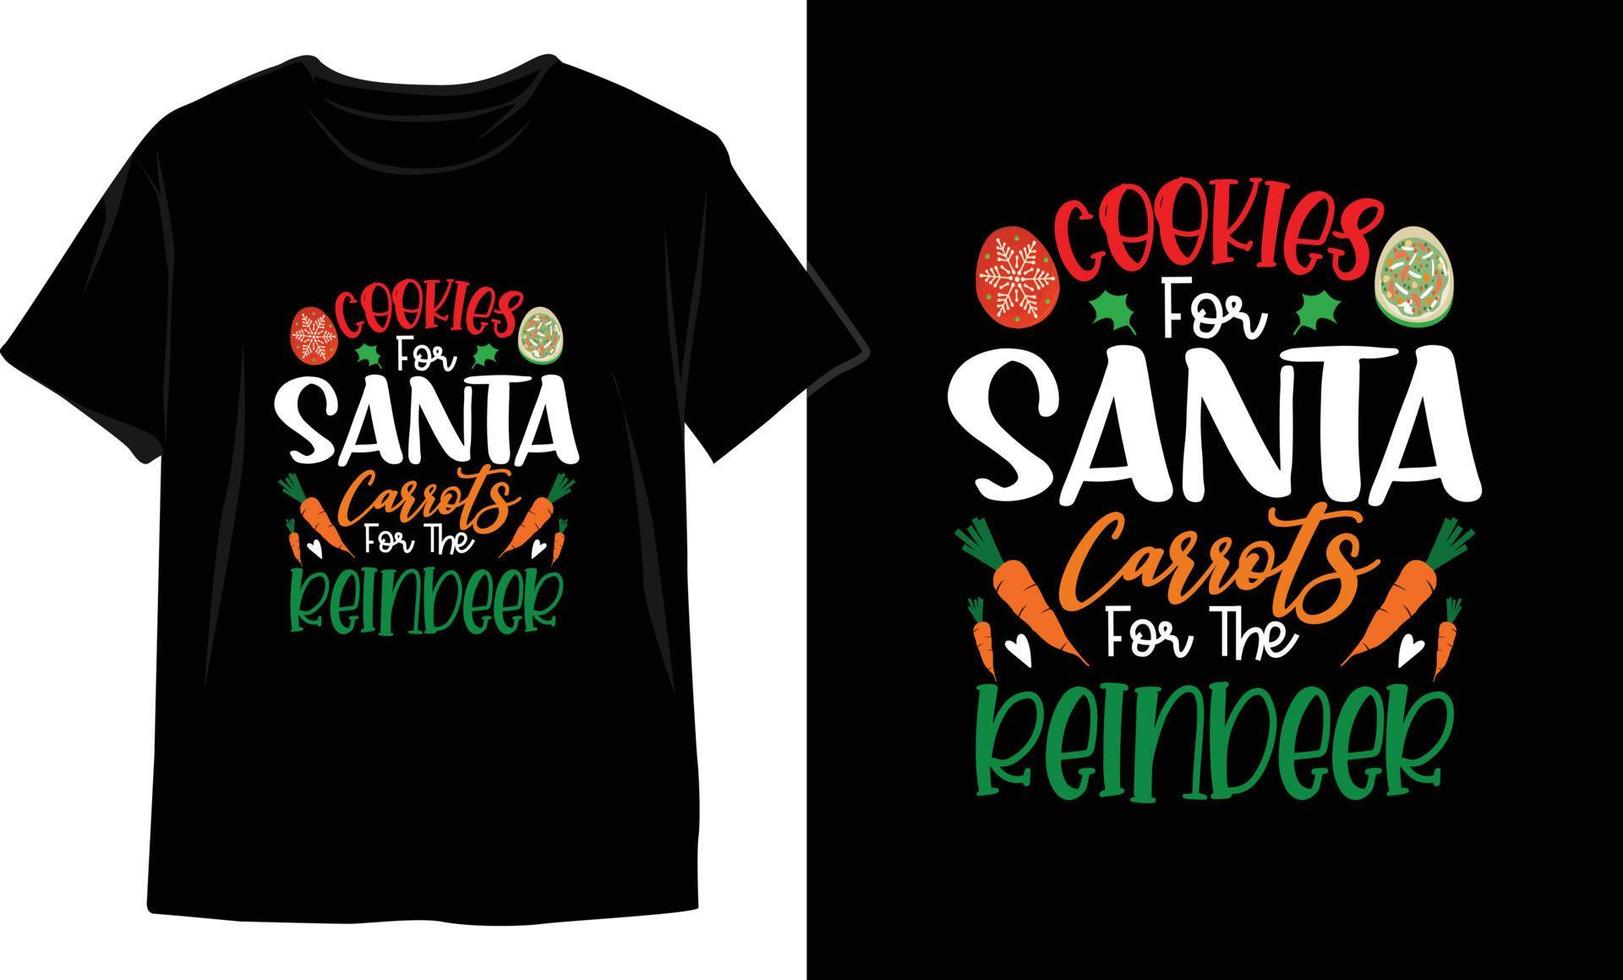 Weihnachts-T-Shirt-Design. Weihnachts-Vektorgrafiken. T-Shirt-Design vektor